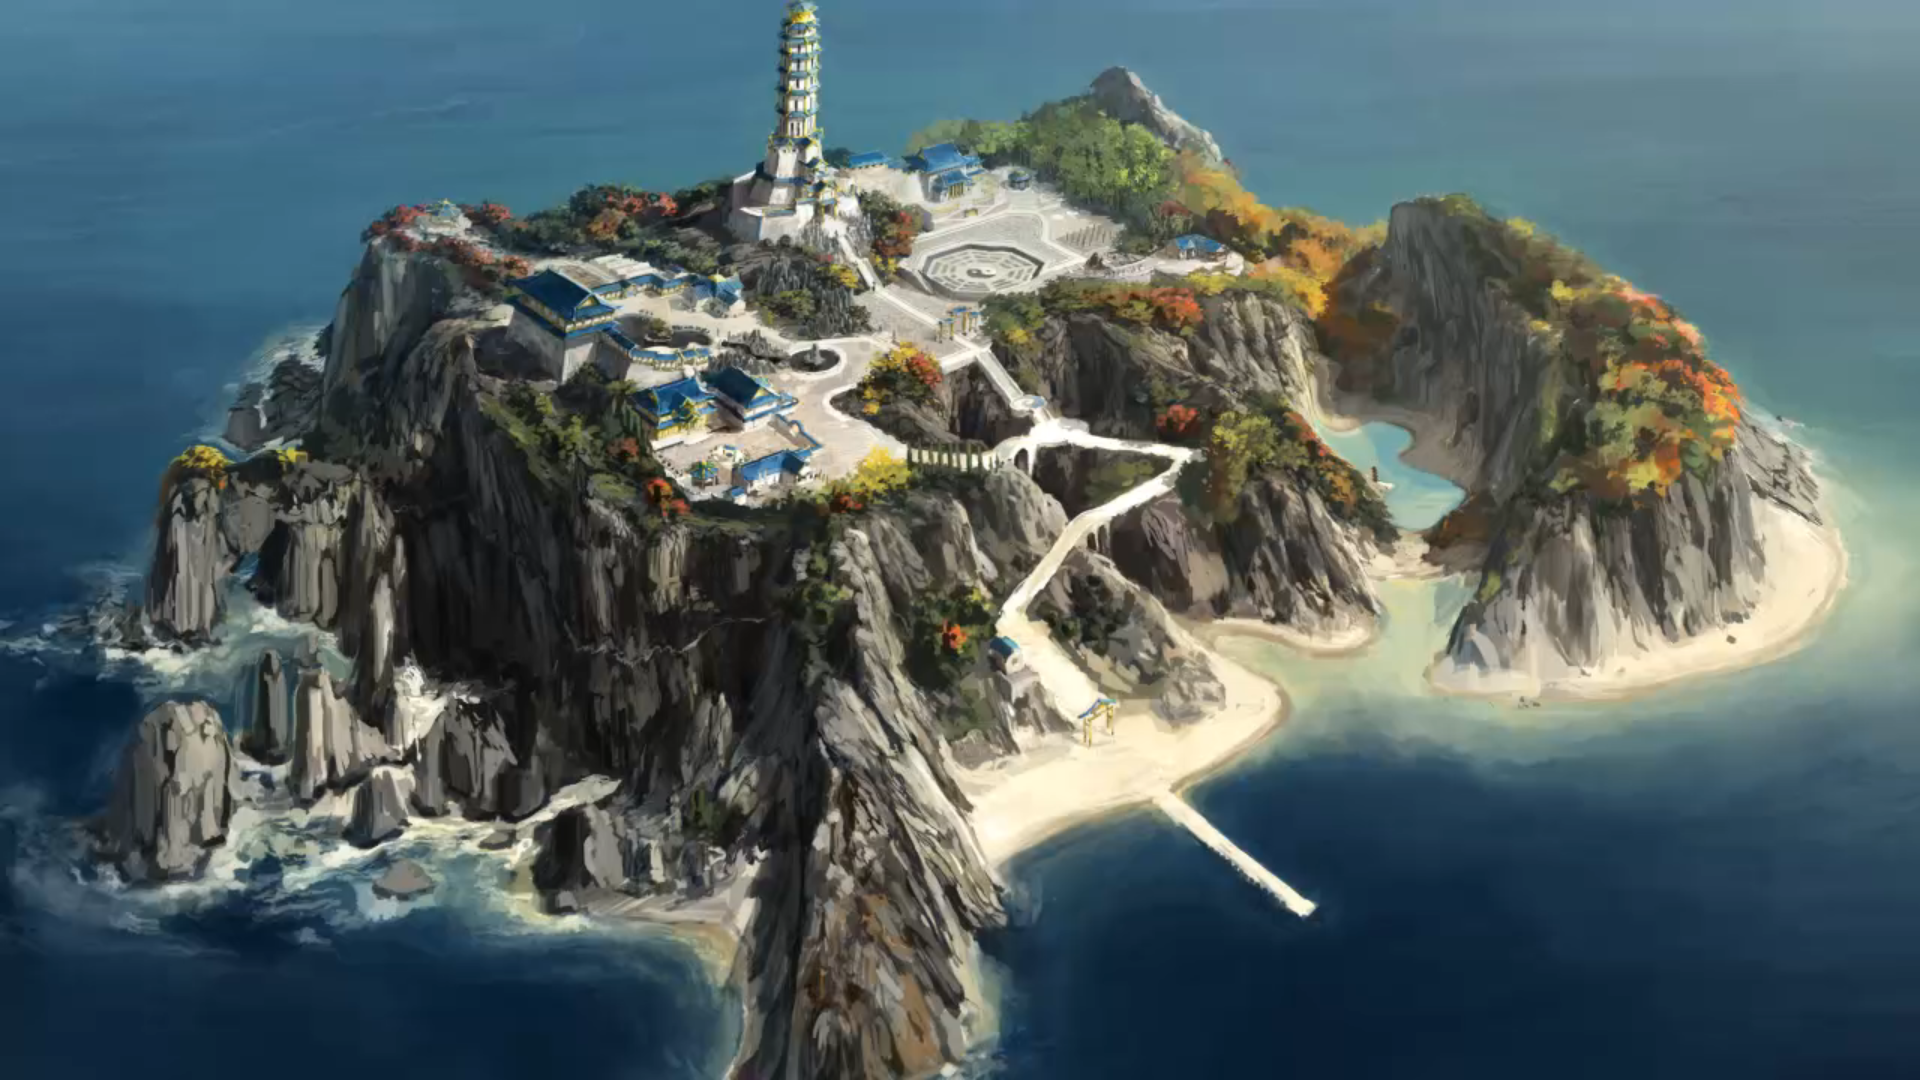 Острове во время второй. Аватар корра островной храм воздуха.